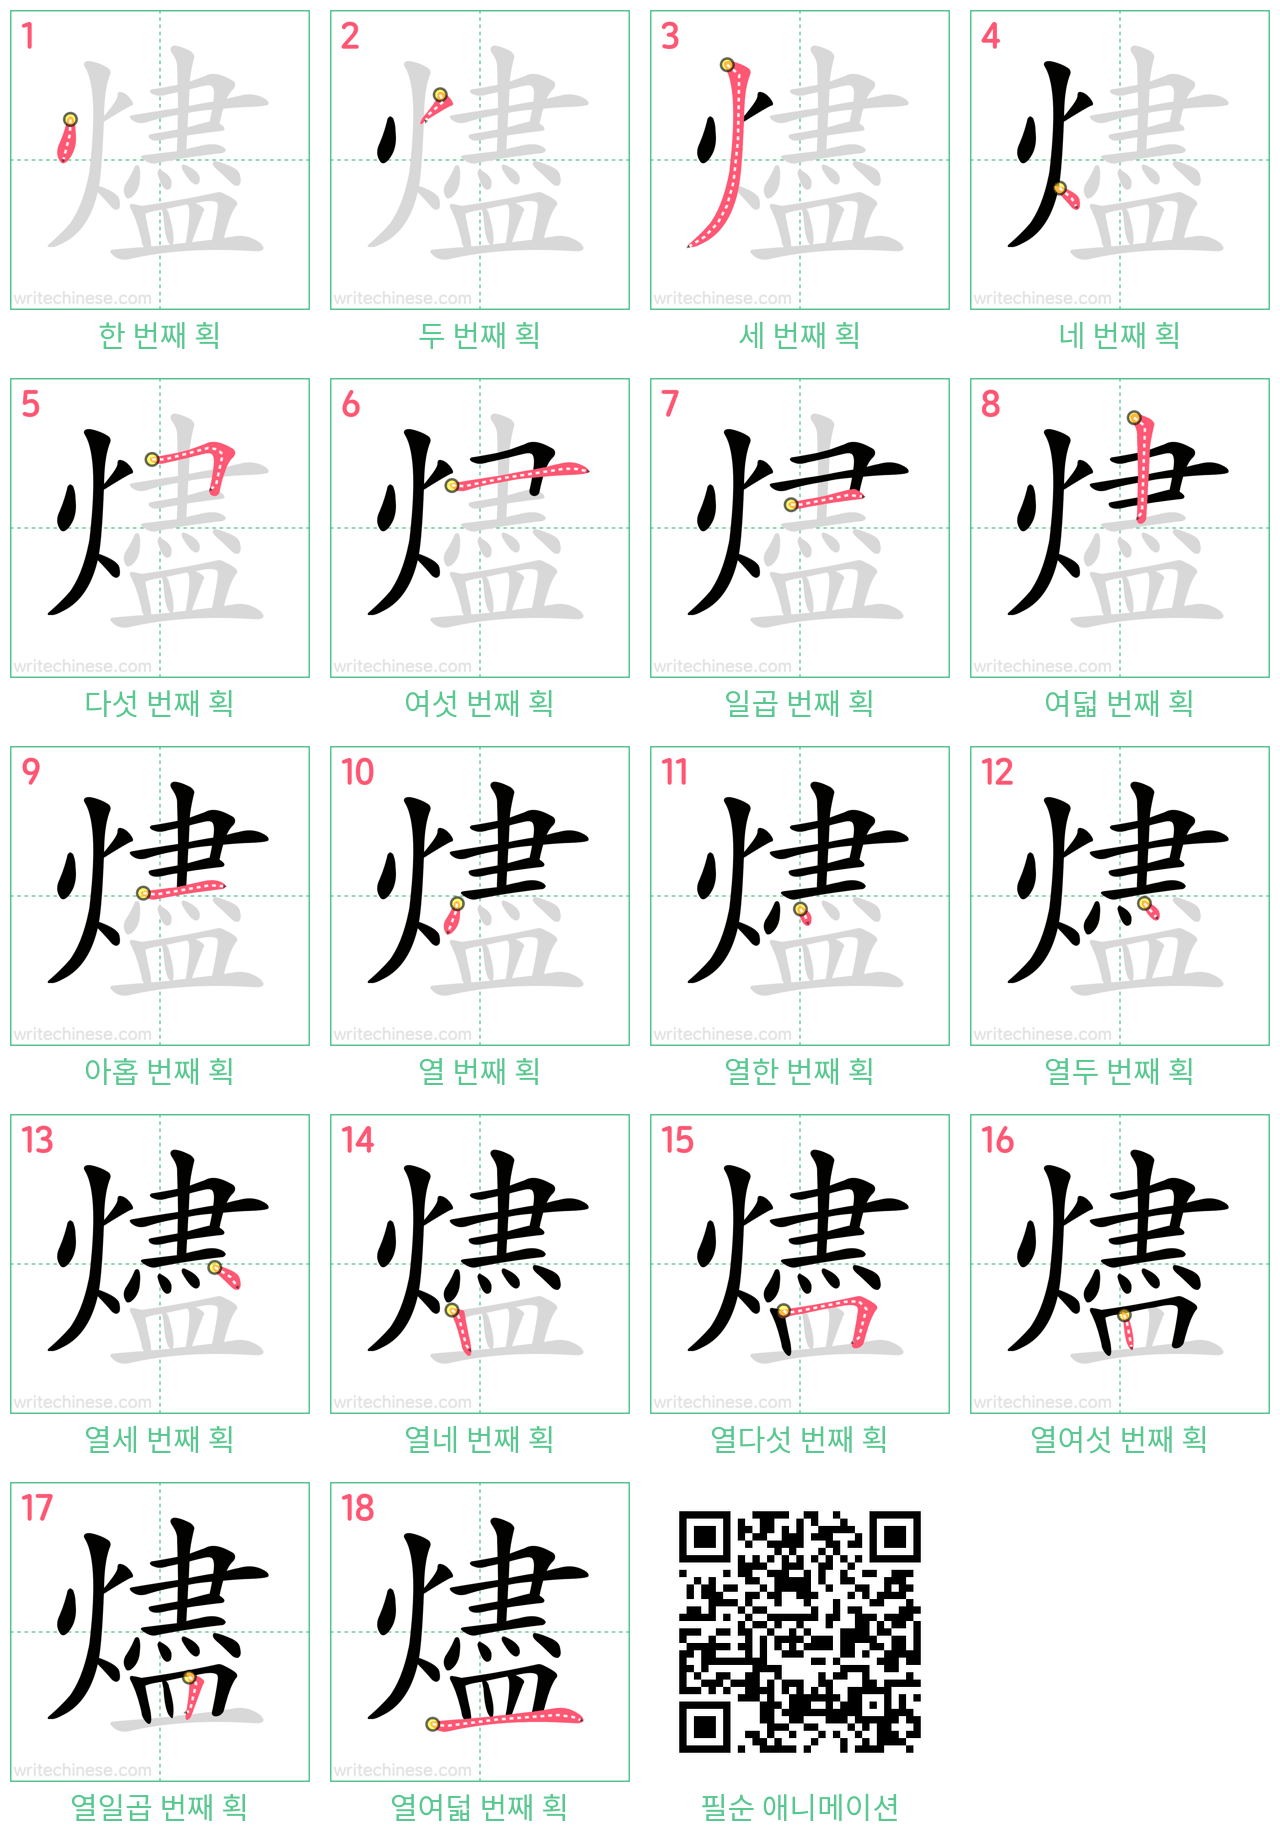 燼 step-by-step stroke order diagrams